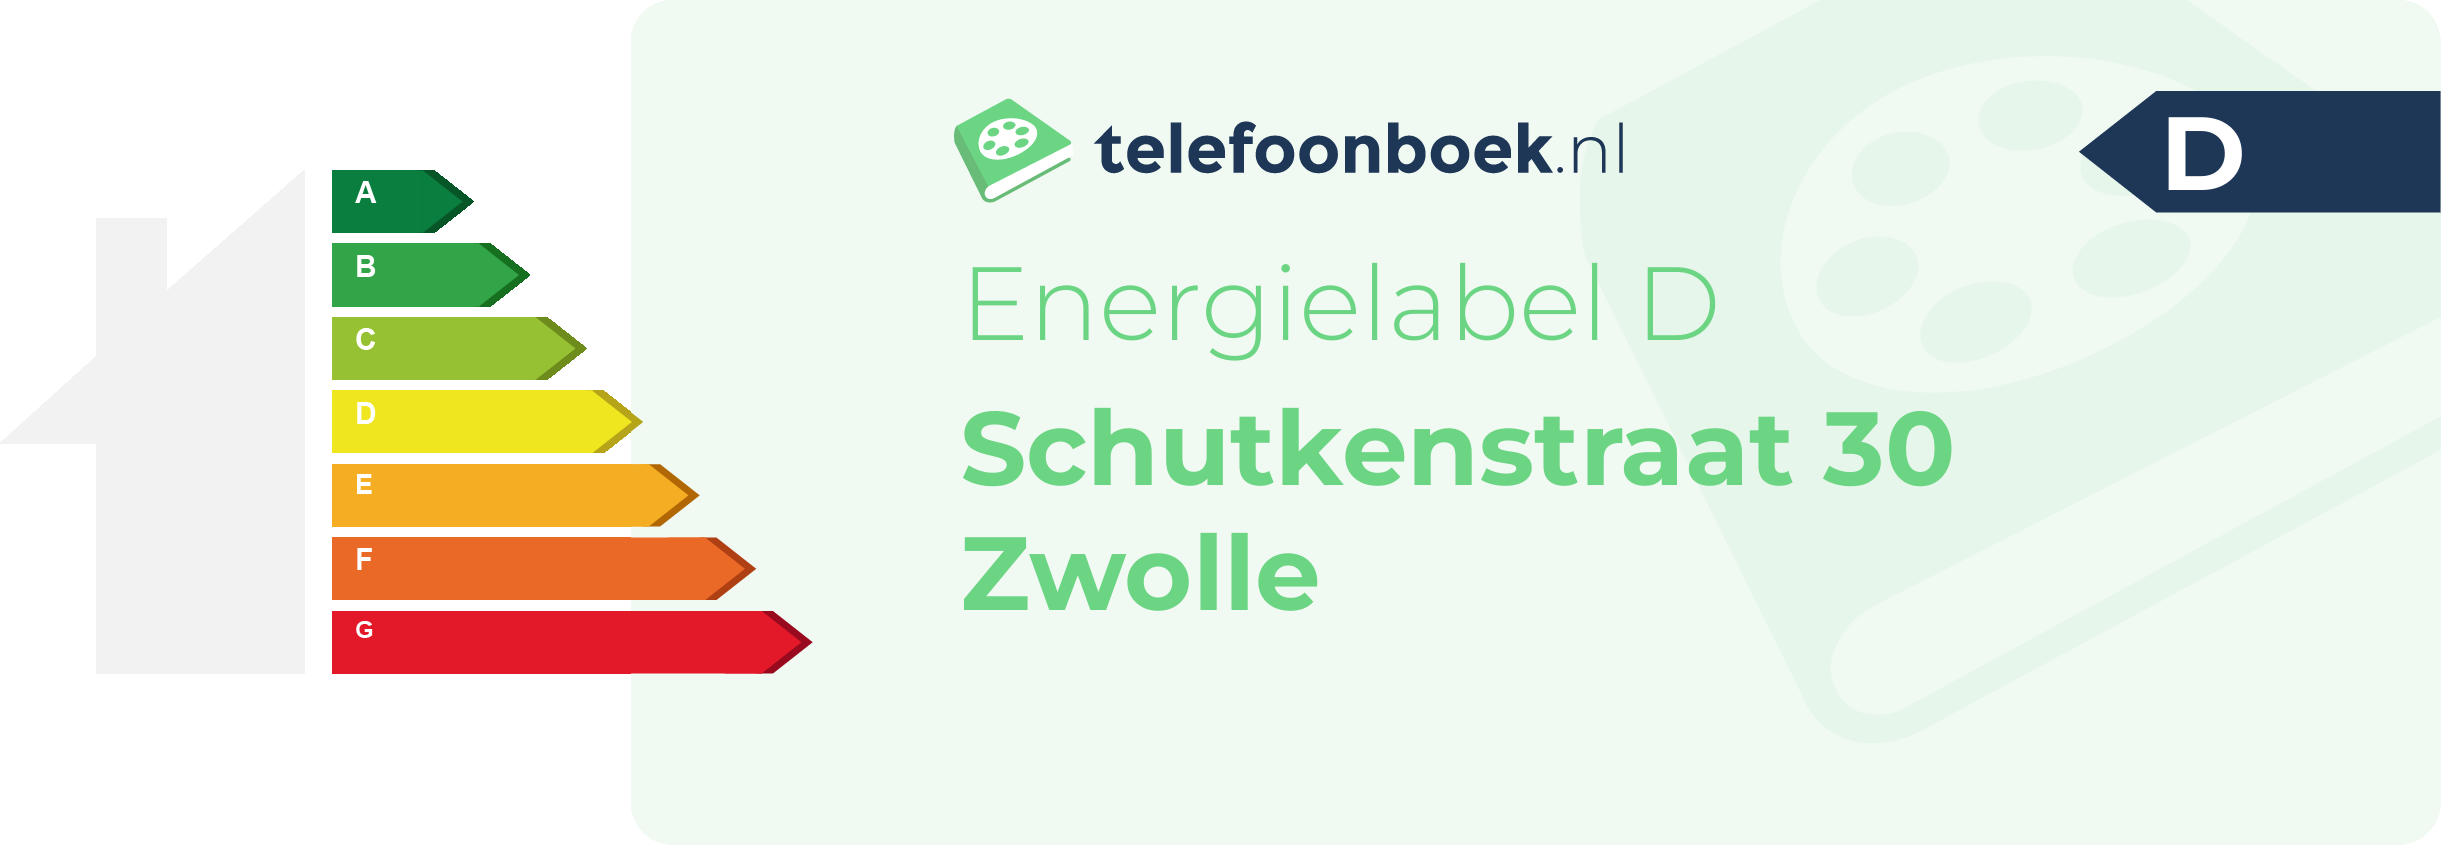 Energielabel Schutkenstraat 30 Zwolle